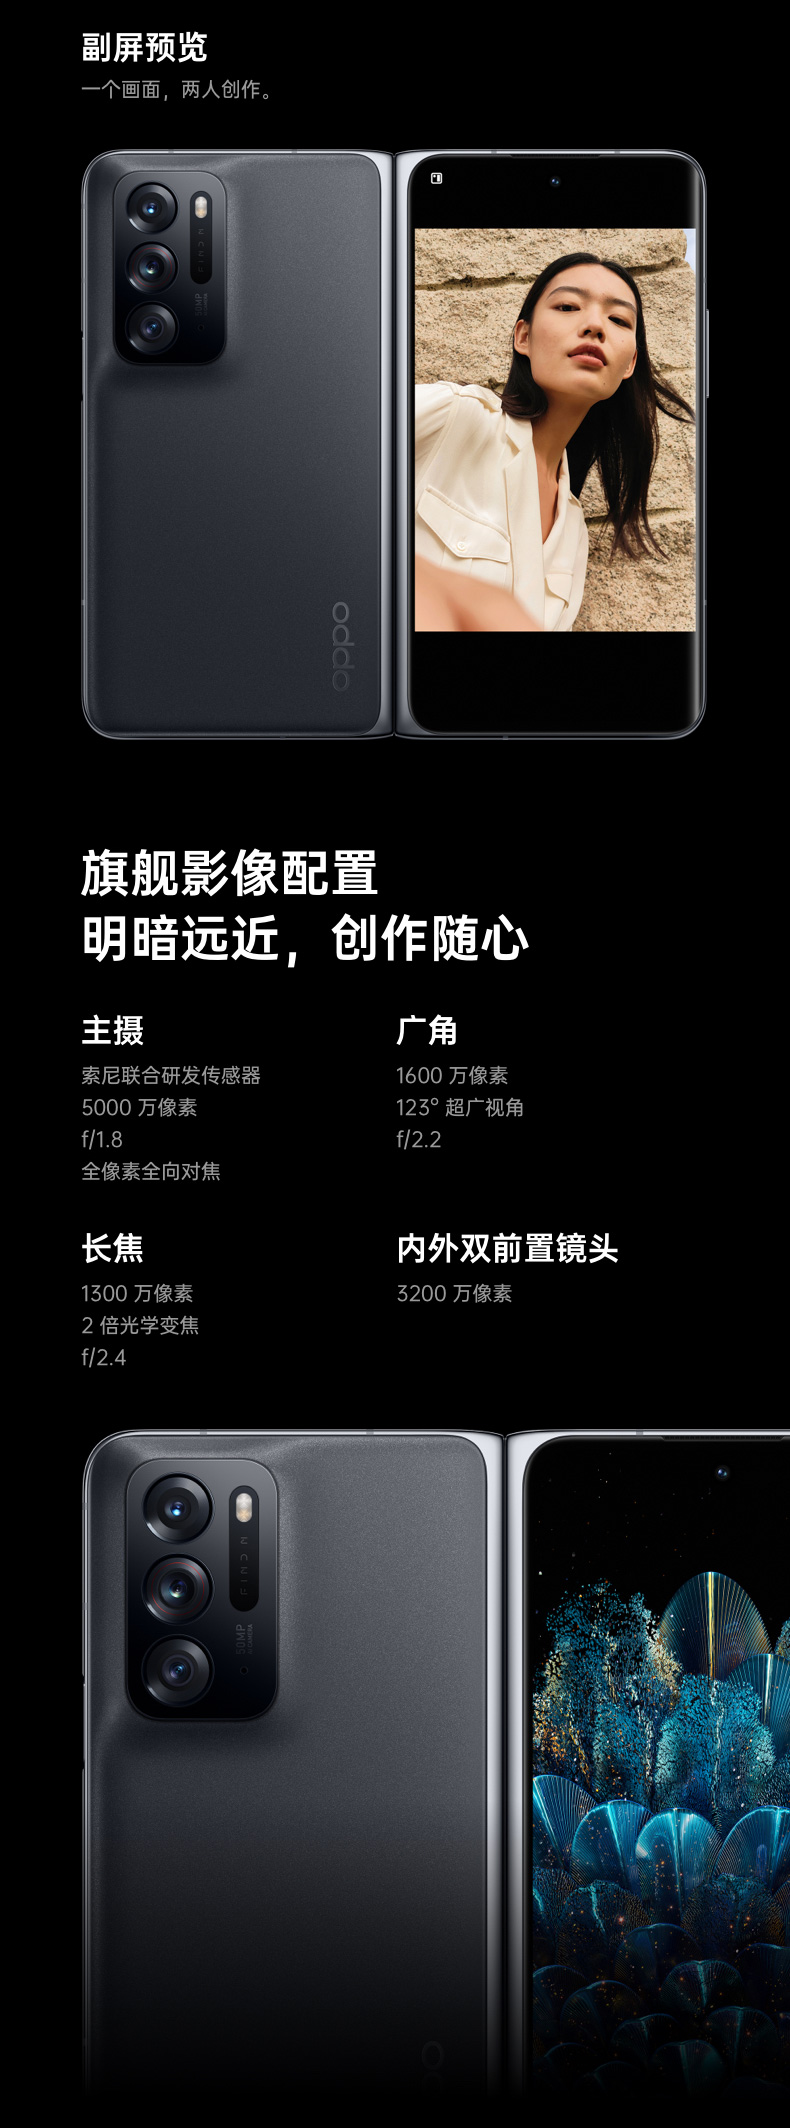 スマートフォン/携帯電話 スマートフォン本体 Buy OPPO Find N Cell Phone Black 12GB RAM 512GB ROM Online With 